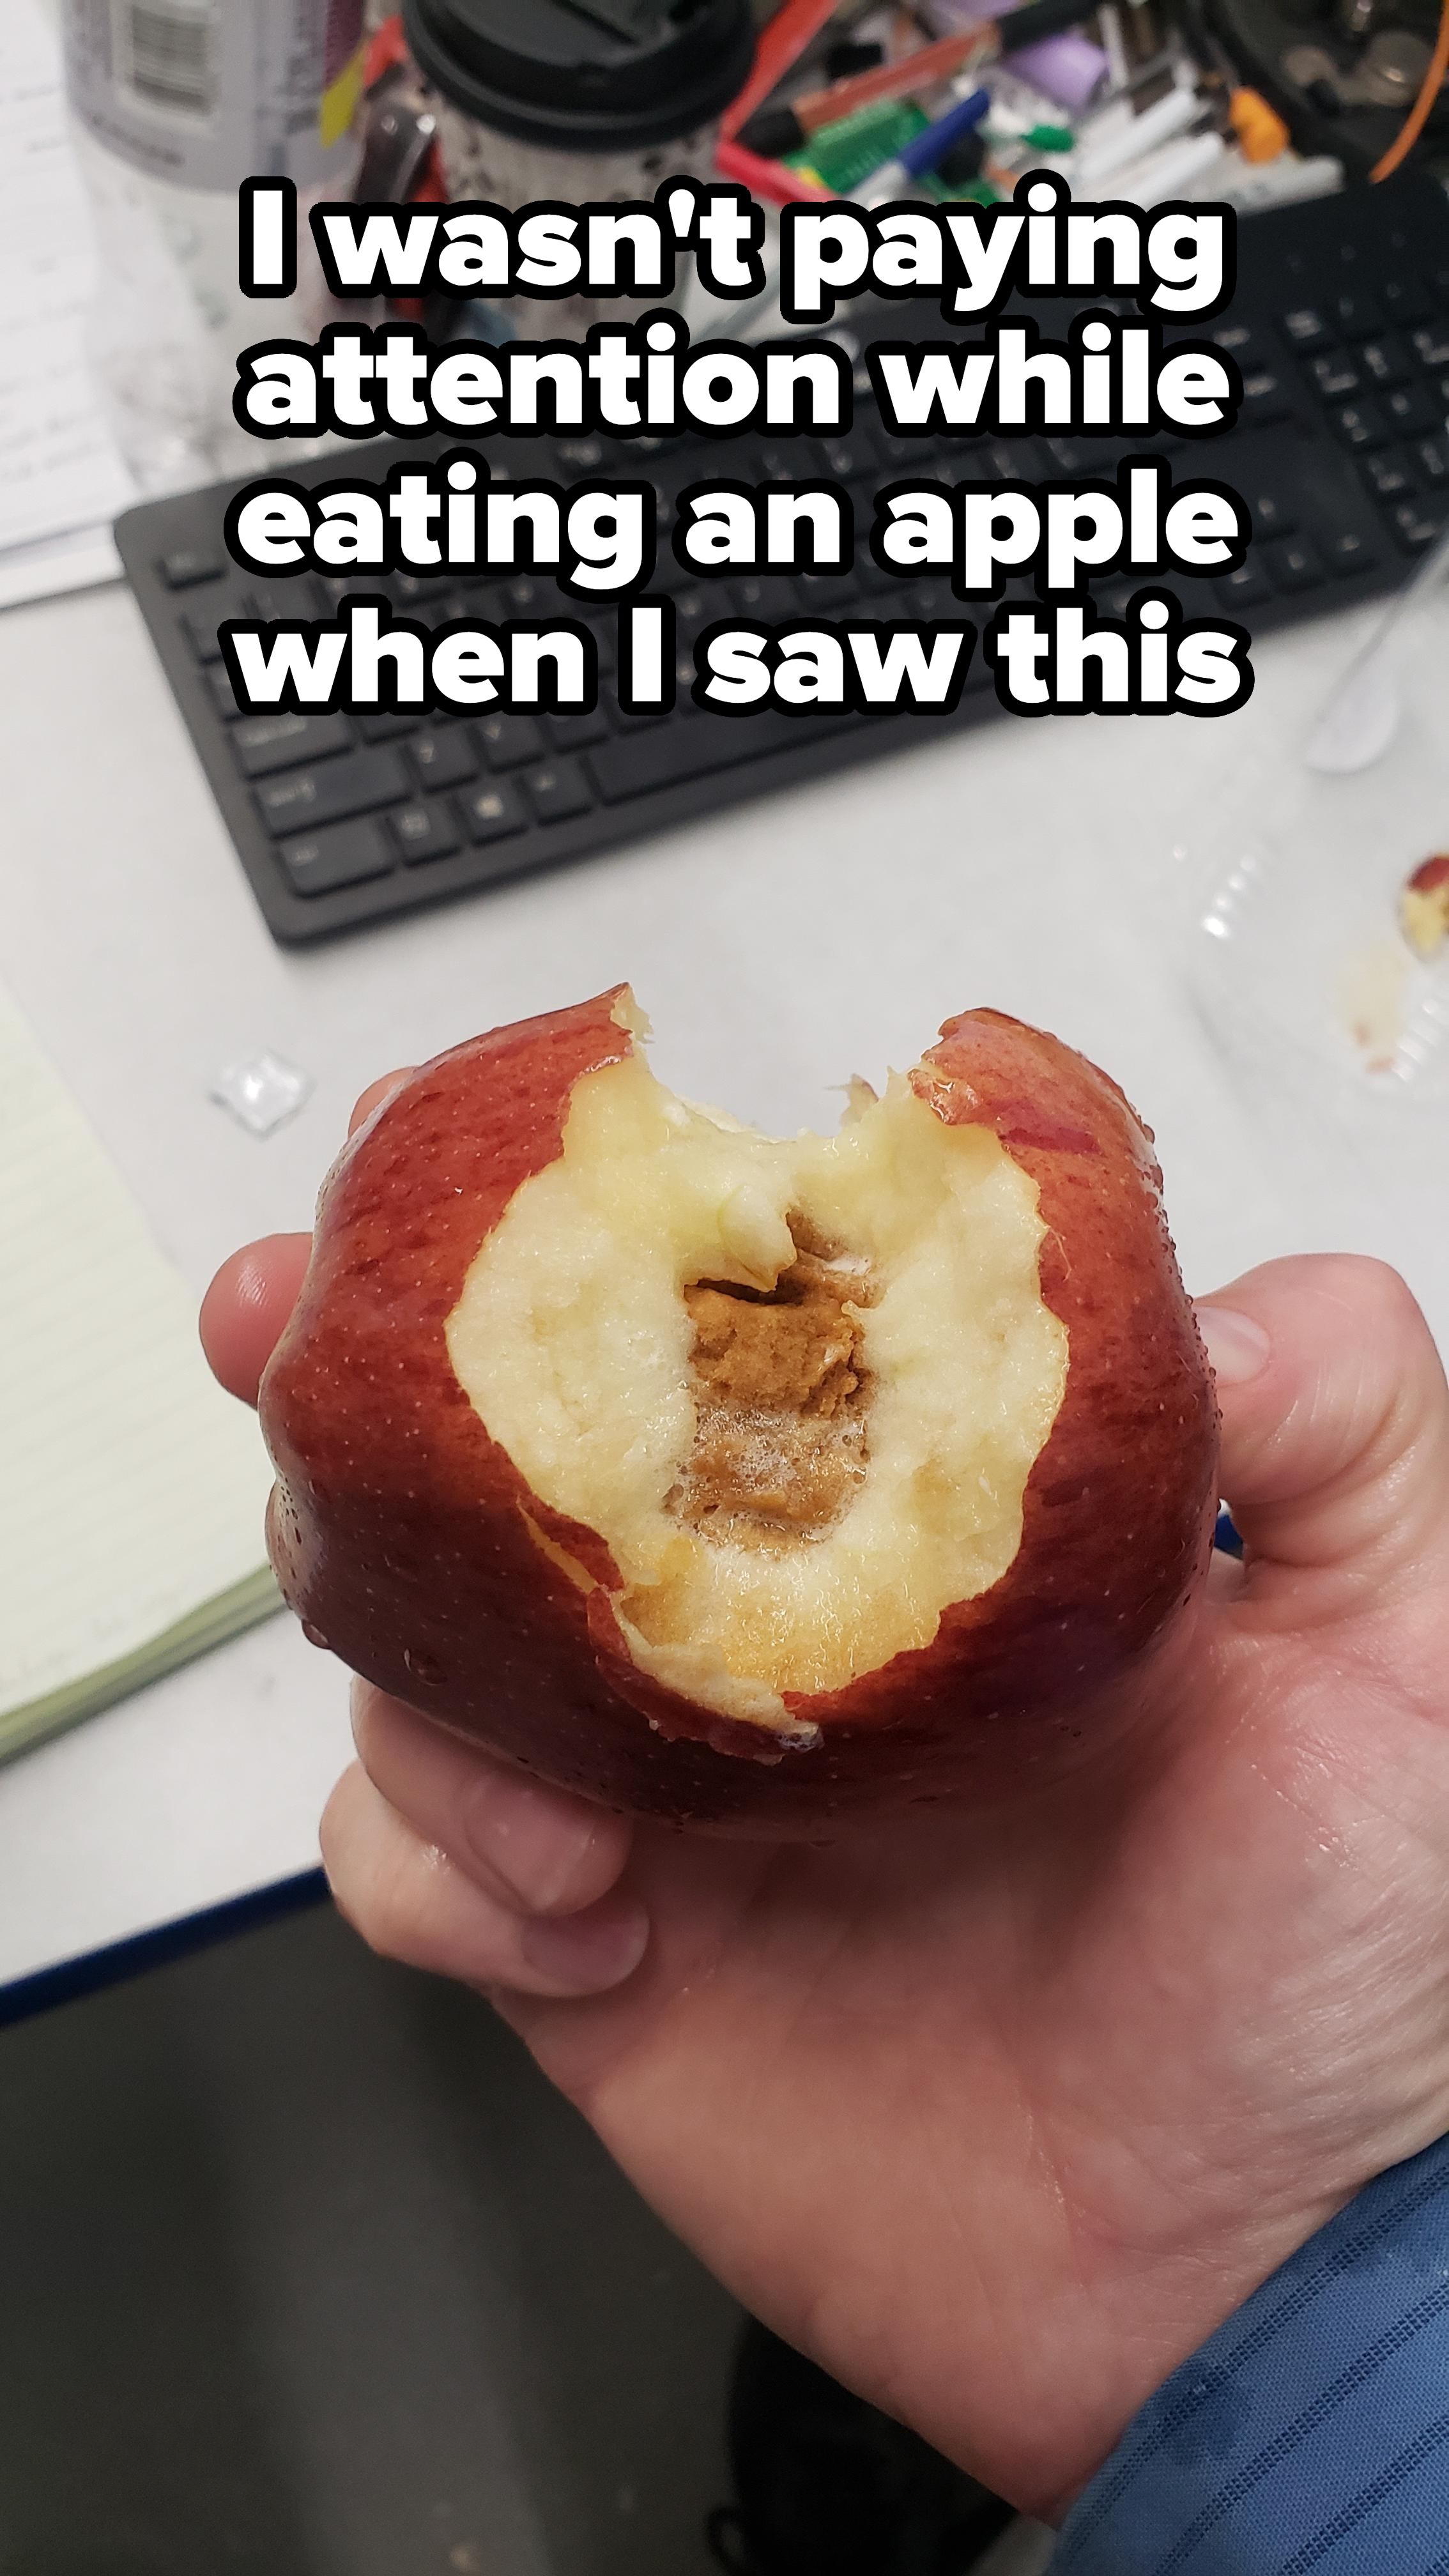 a moldy apple